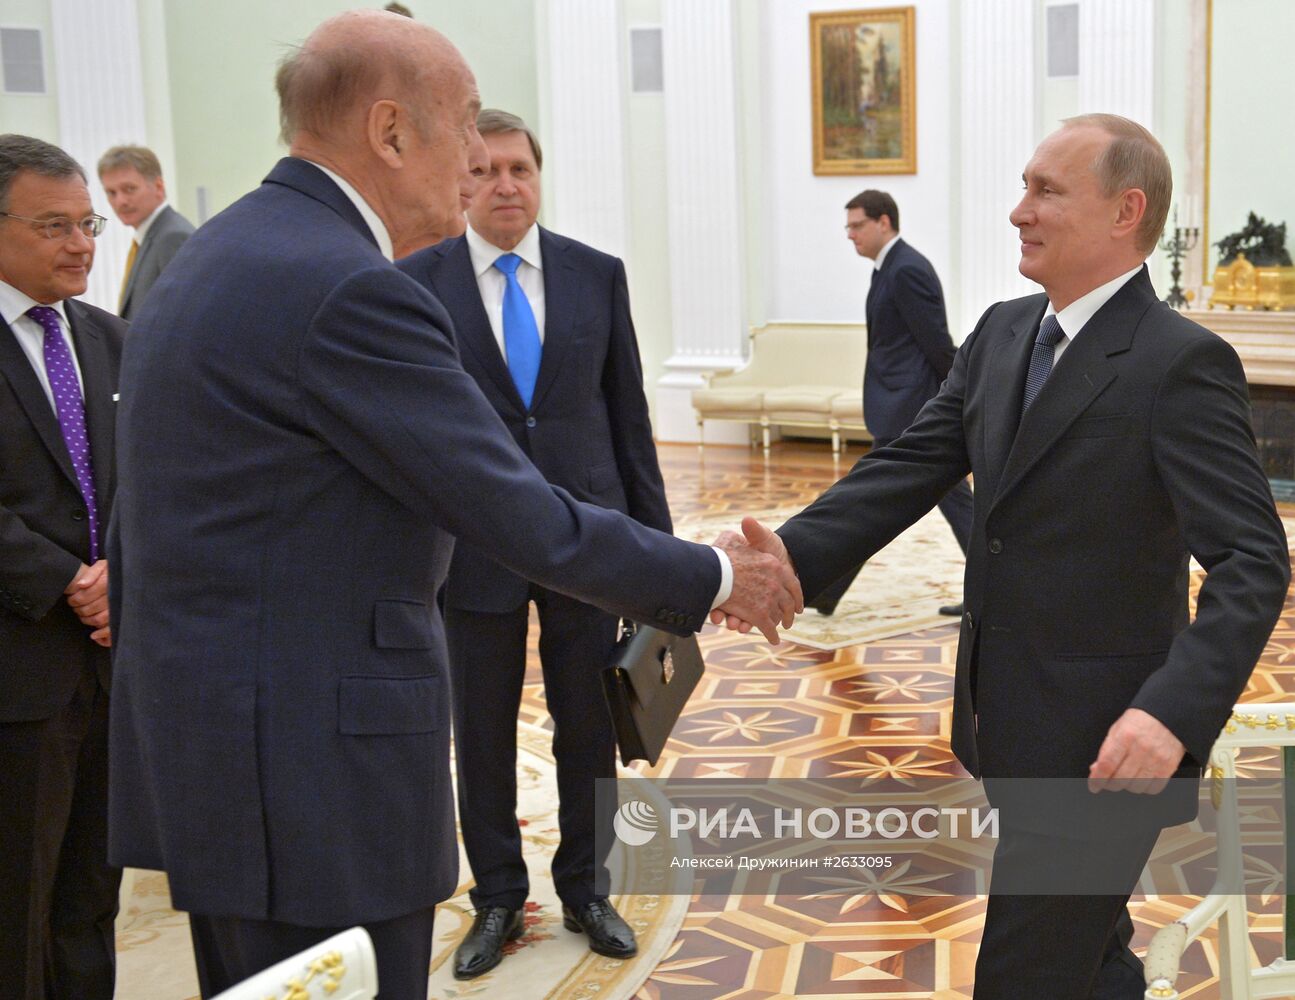 ПрезидентРФ В.Путин встретился с экс-президентом Франции В.Ж.д'Эстеном